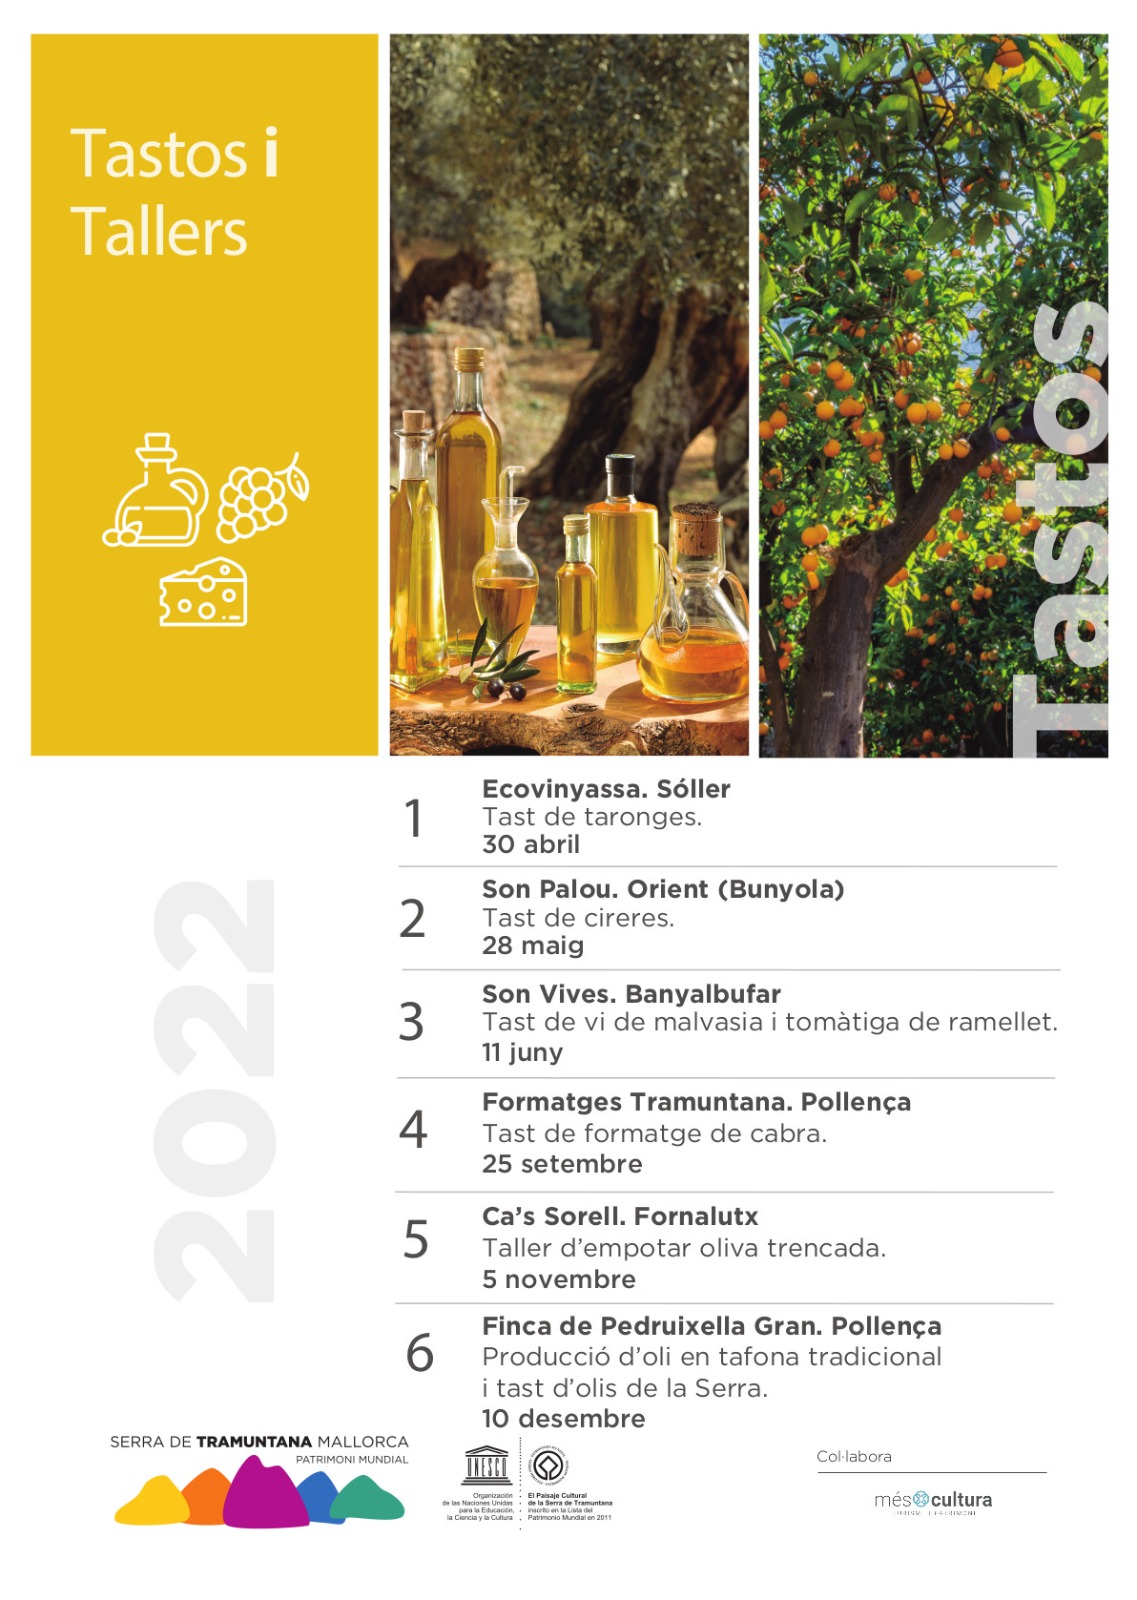 Calendari dels tasts i tallers gastronòmics a la serra de Tramuntana.